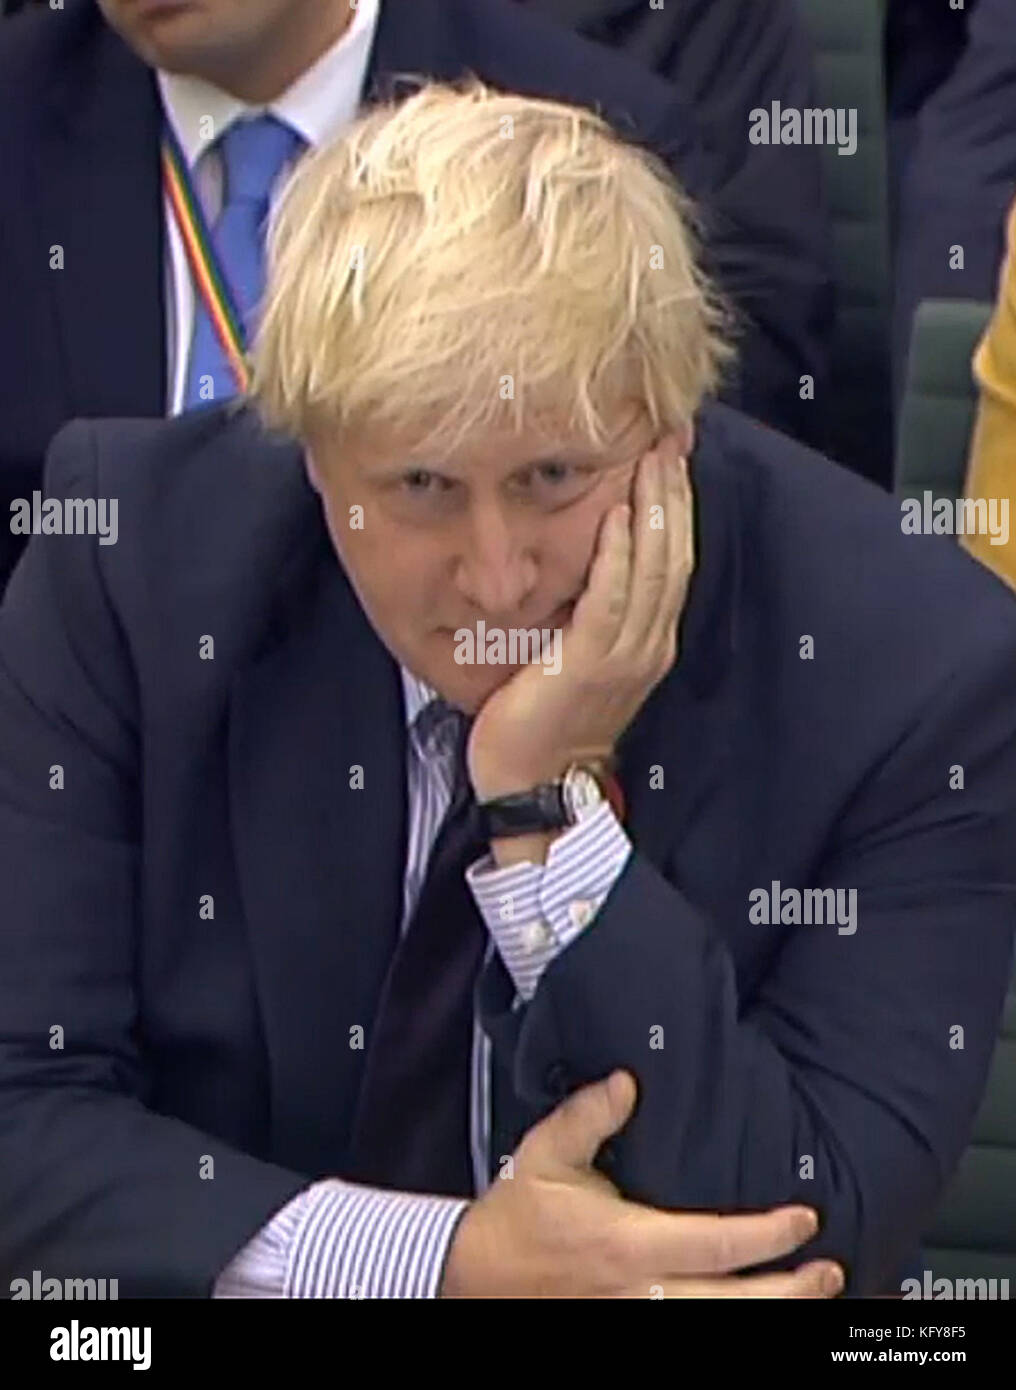 Le secrétaire aux Affaires étrangères Boris Johnson présente des témoignages au Comité des Affaires étrangères de la Chambre des communes à Portcullis, à Londres. Banque D'Images